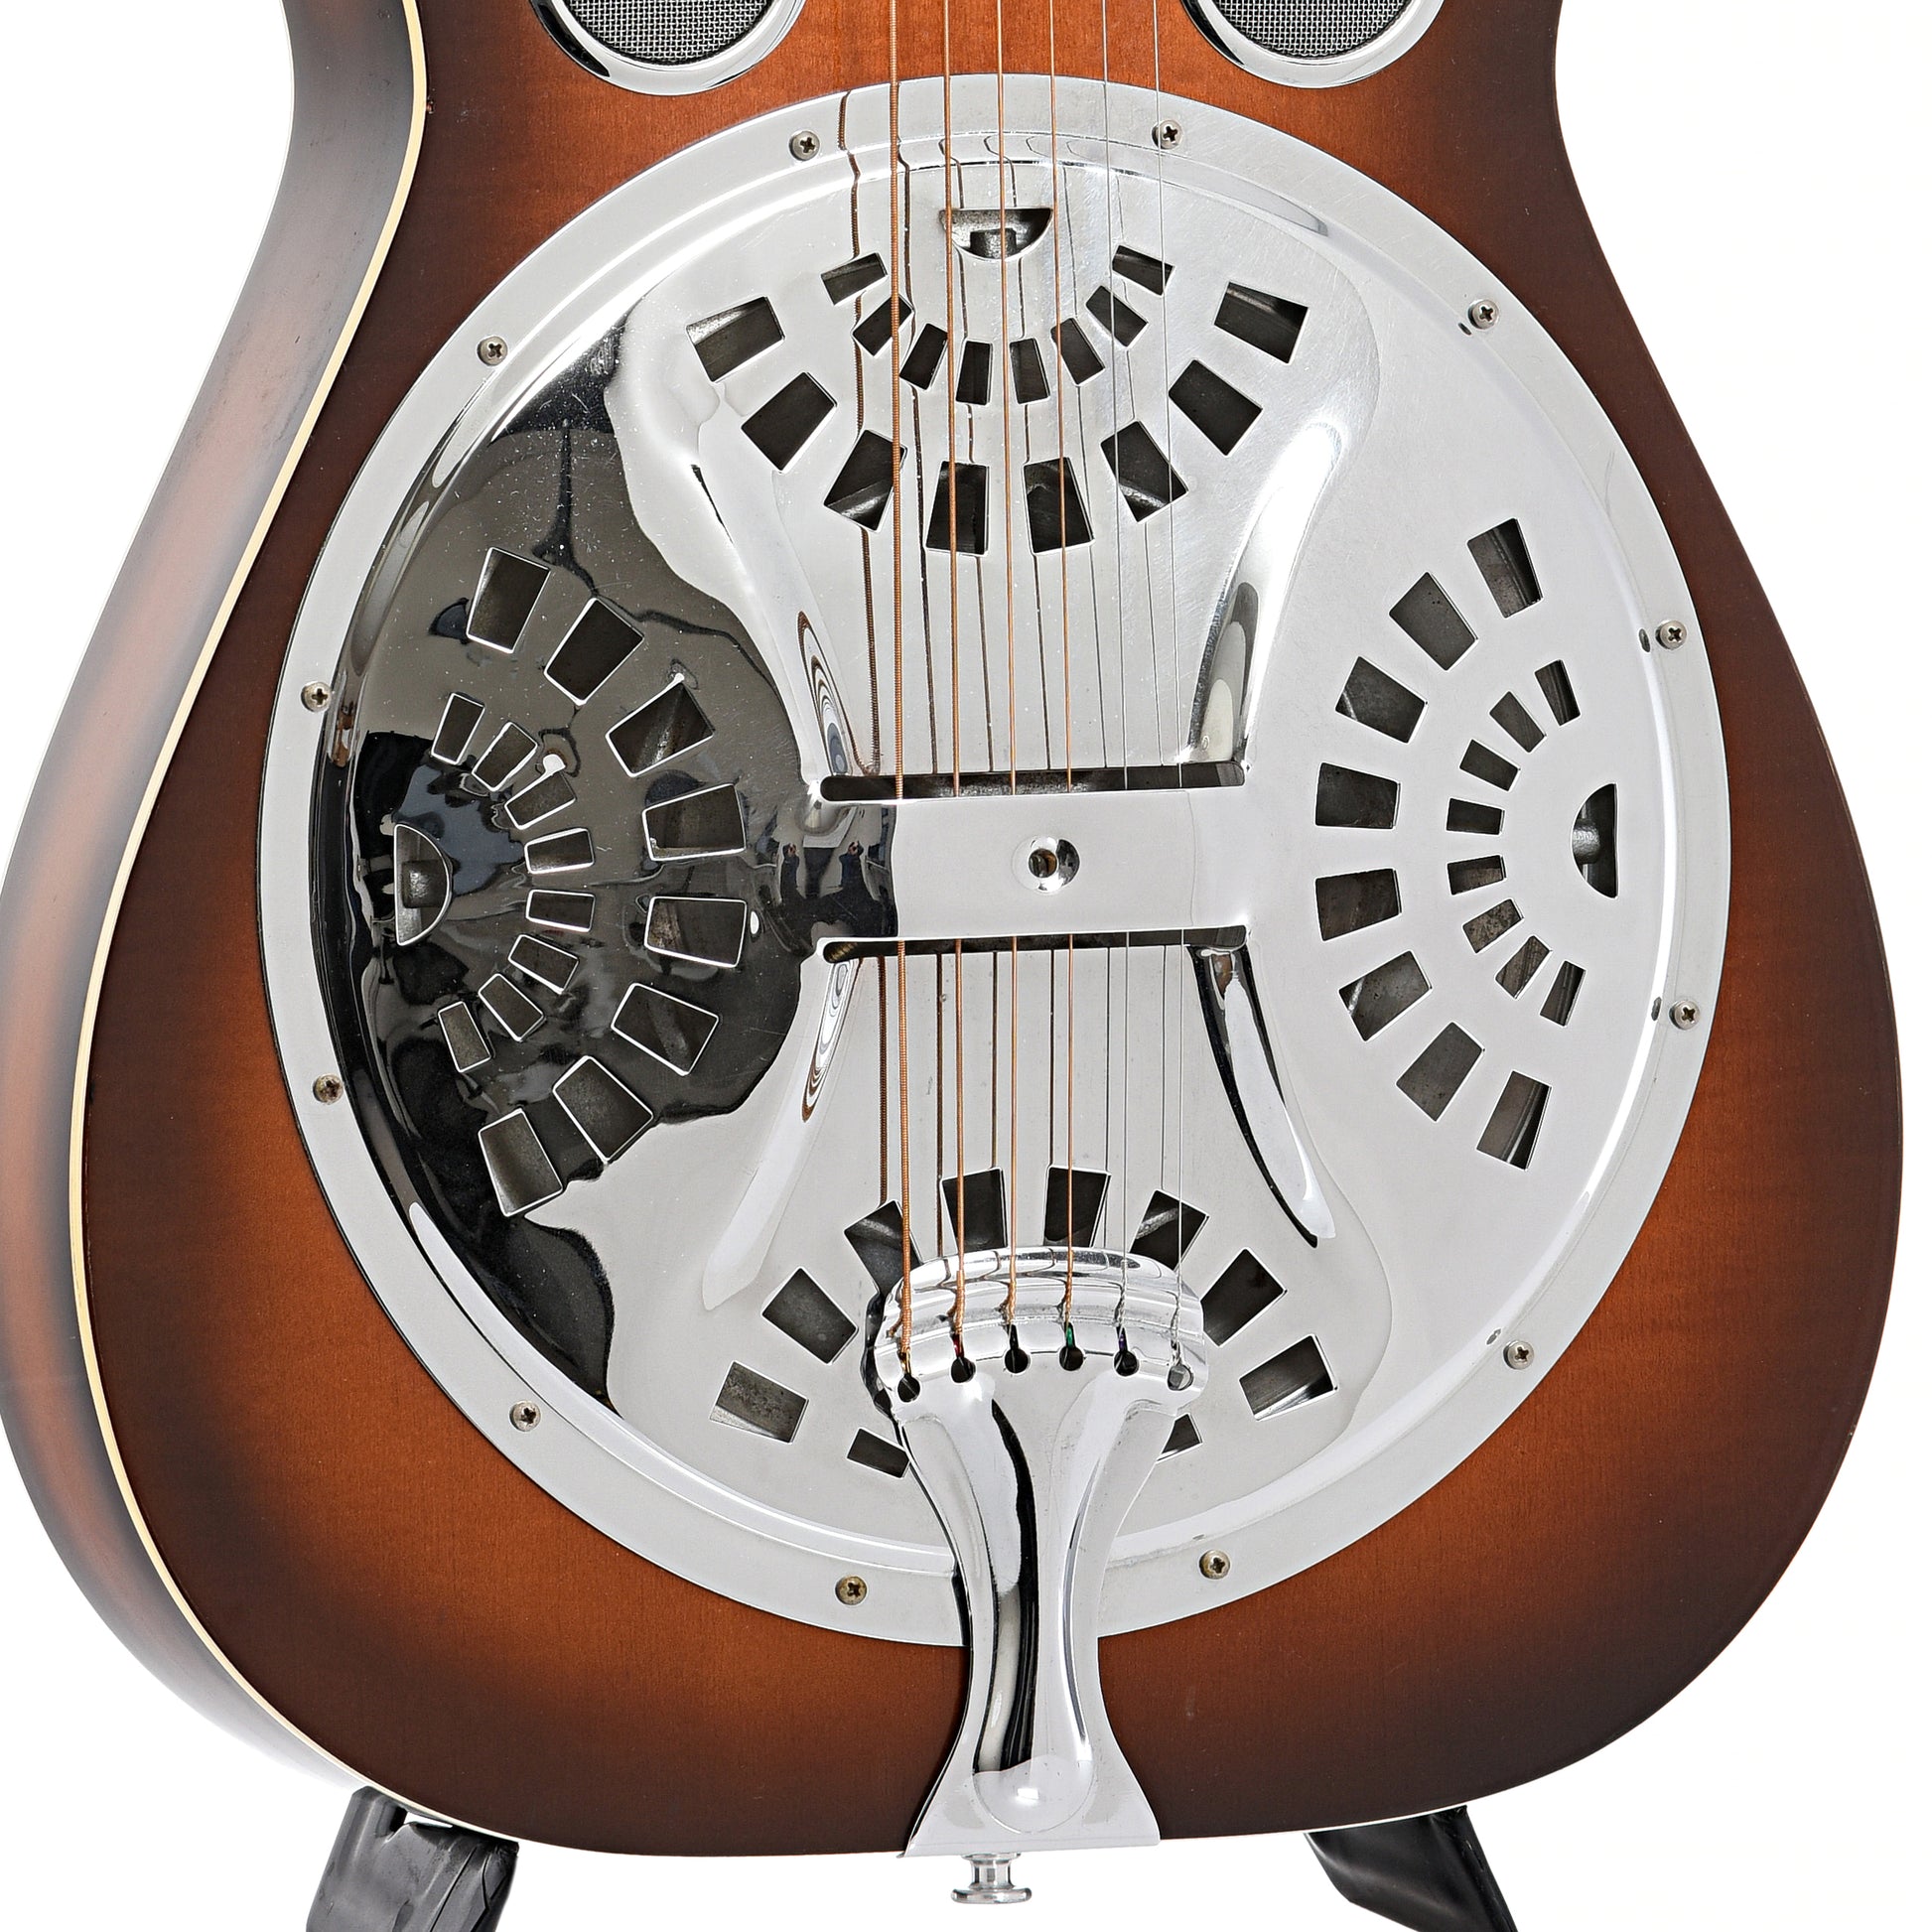 resonator area of Dobro 60DS Squareneck Resonator Guitar (1987)